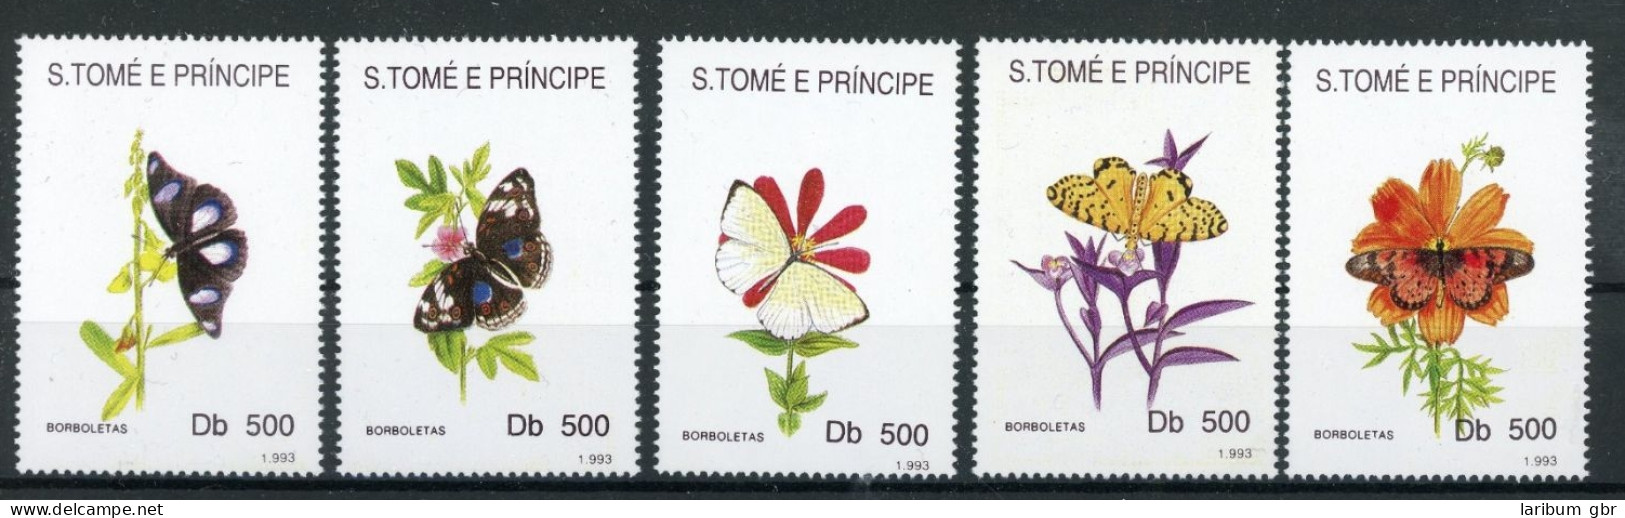 Sao Tome E Principe 1399-1403 Postfrisch Schmetterling #JT954 - São Tomé Und Príncipe